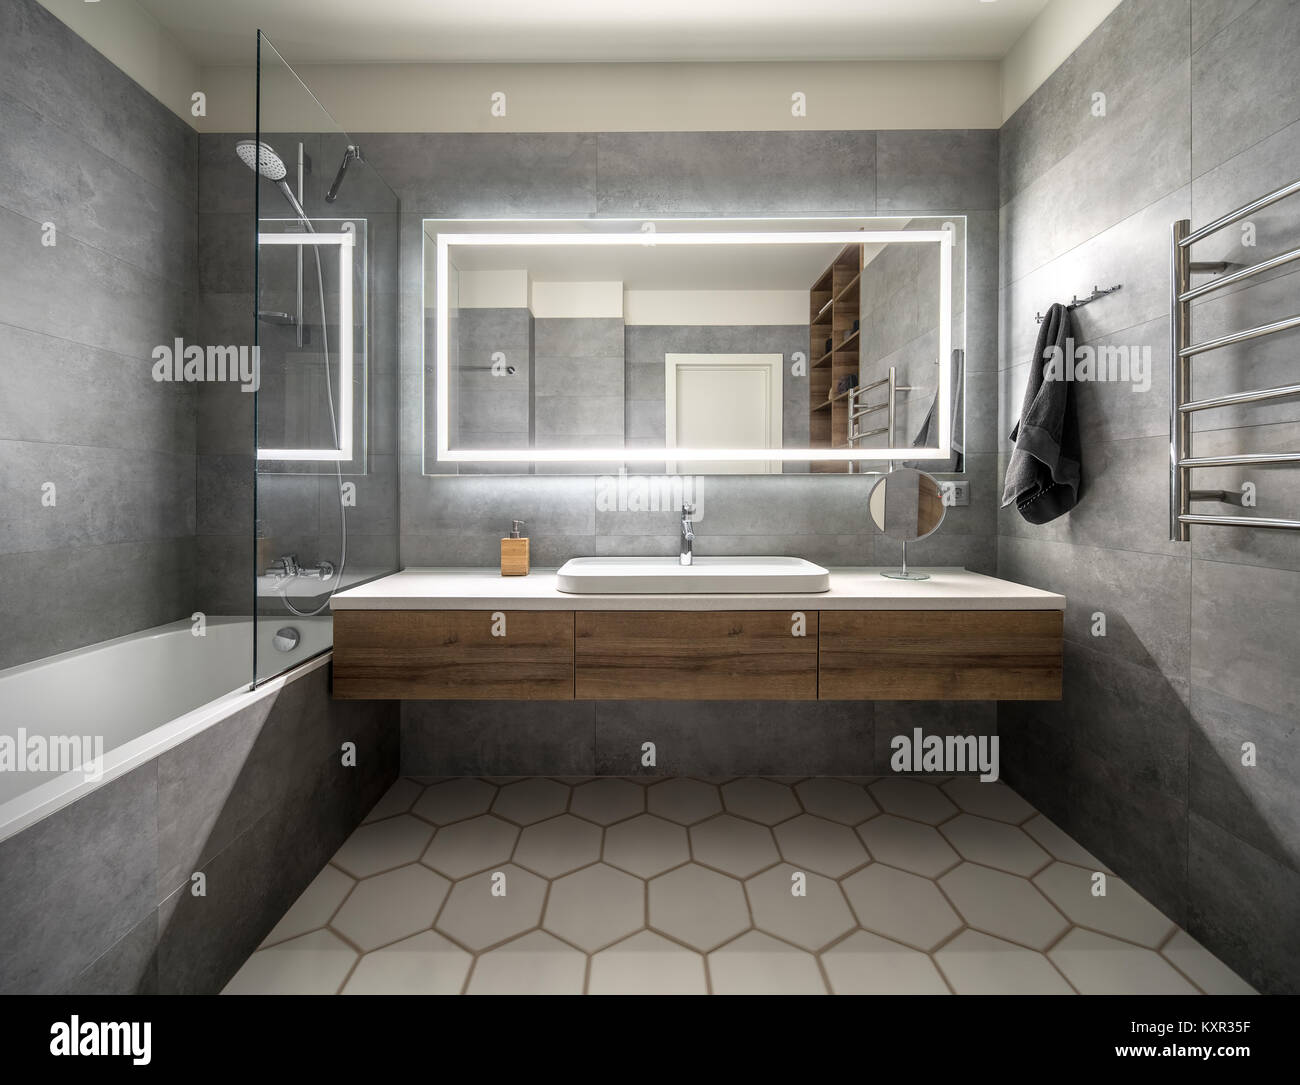 Badezimmer in einem modernen Stil mit grauen und weißen Fliesen. Es gibt einen großen Spiegel mit leuchtenden Lampen, Tischplatte mit holzschubkästen und Waschbecken, Badewanne mit sh Stockfoto